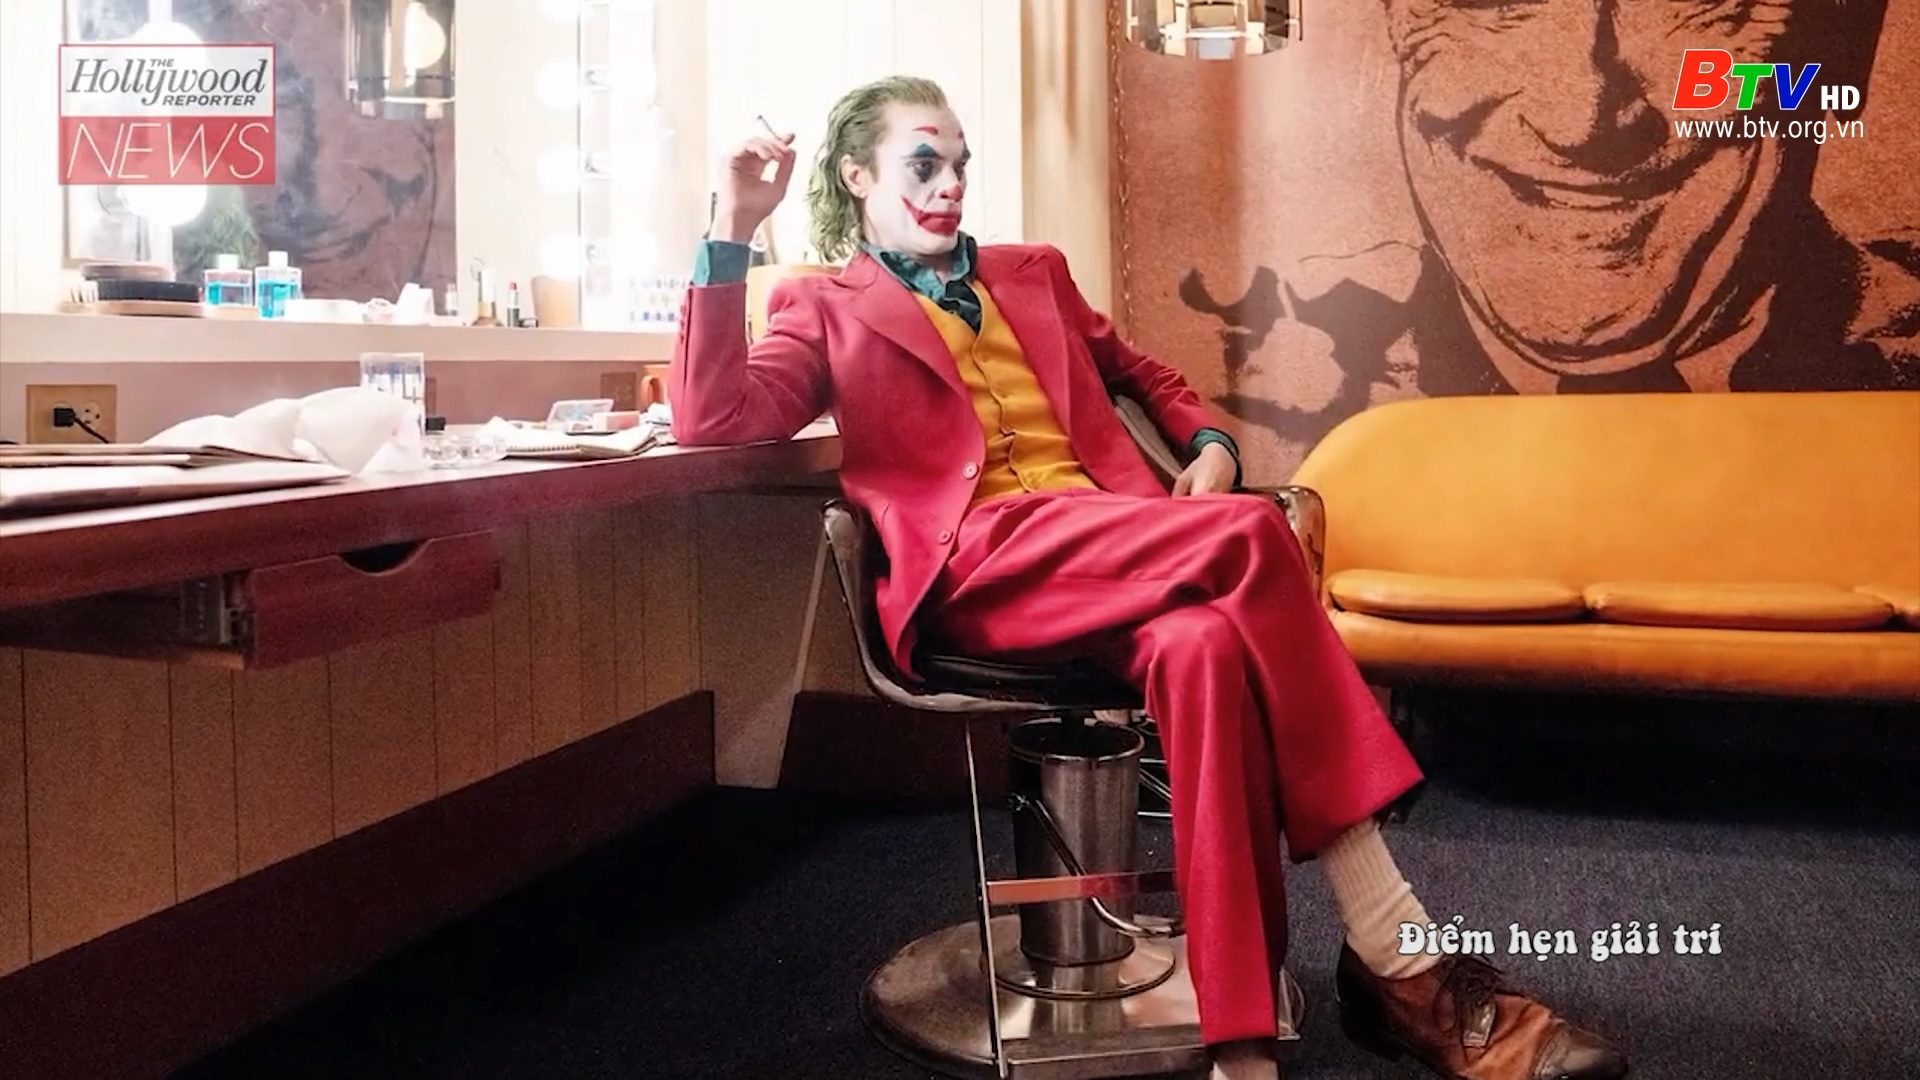 Đạo diễn Todd Phillips thông báo bộ phim “Joker” sẽ có phần 2